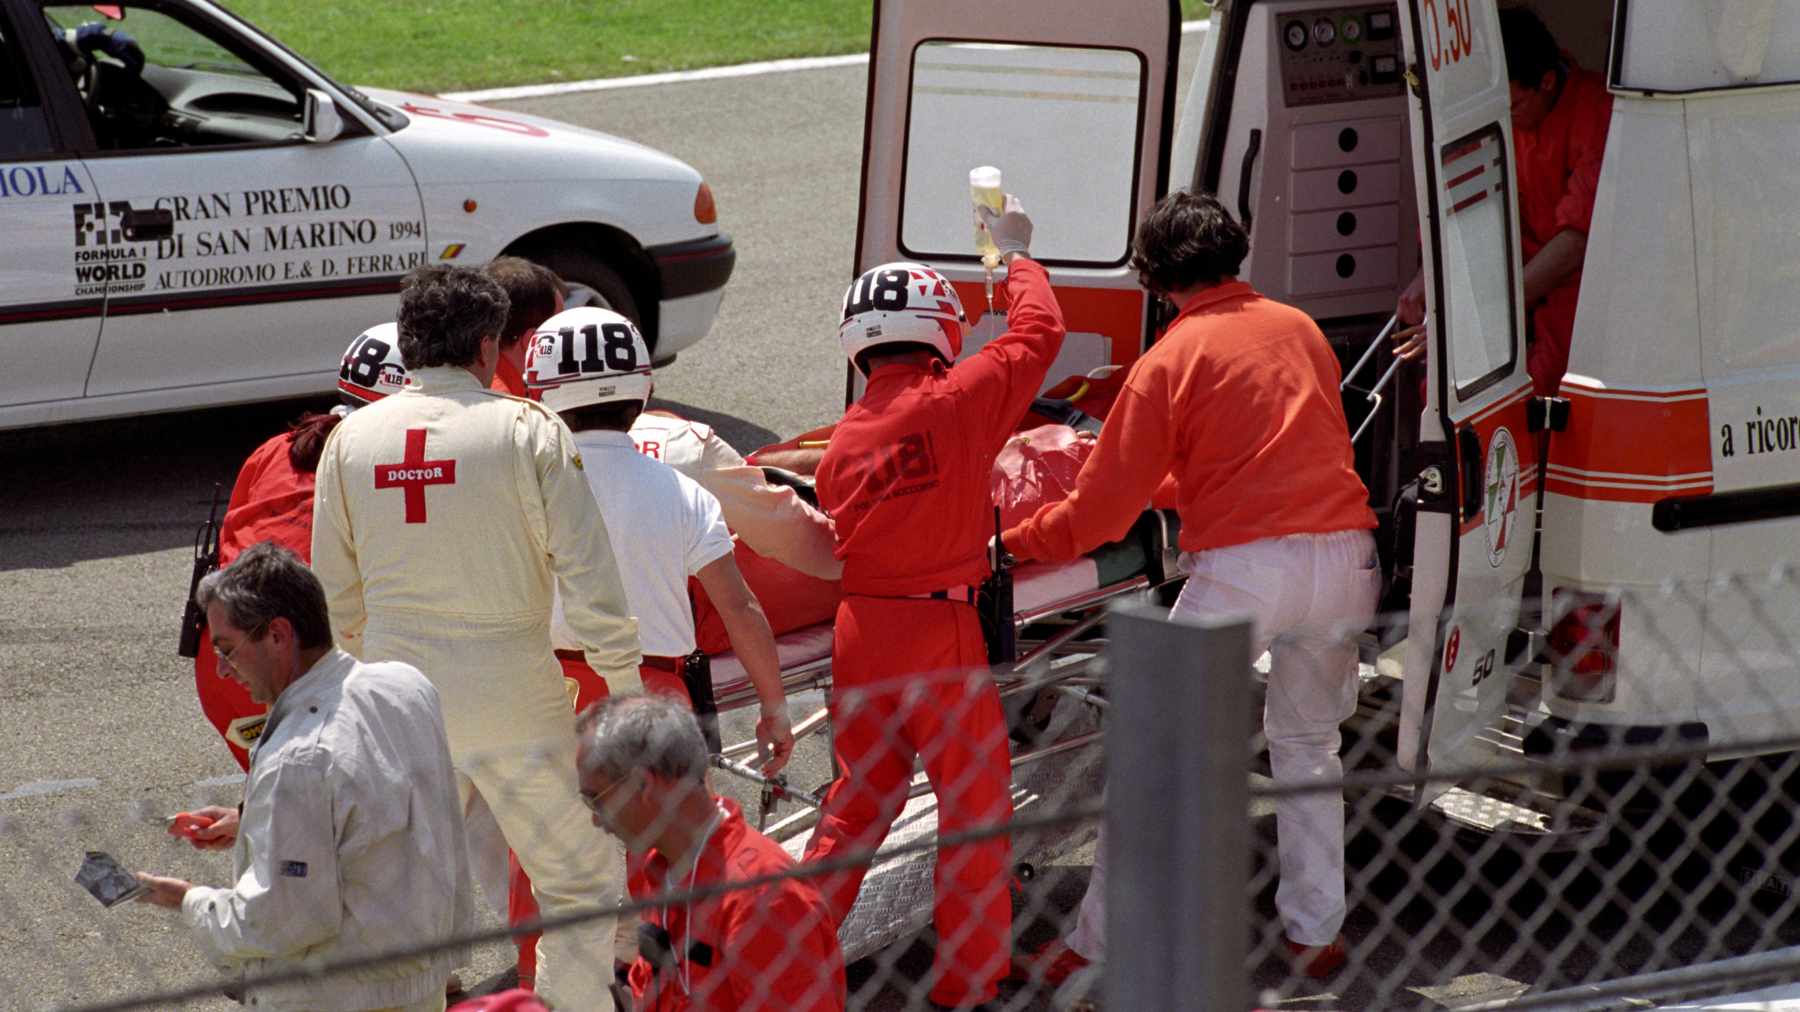 Rubens Barrichelloa siirretään ambulanssiin Imolassa 1994.